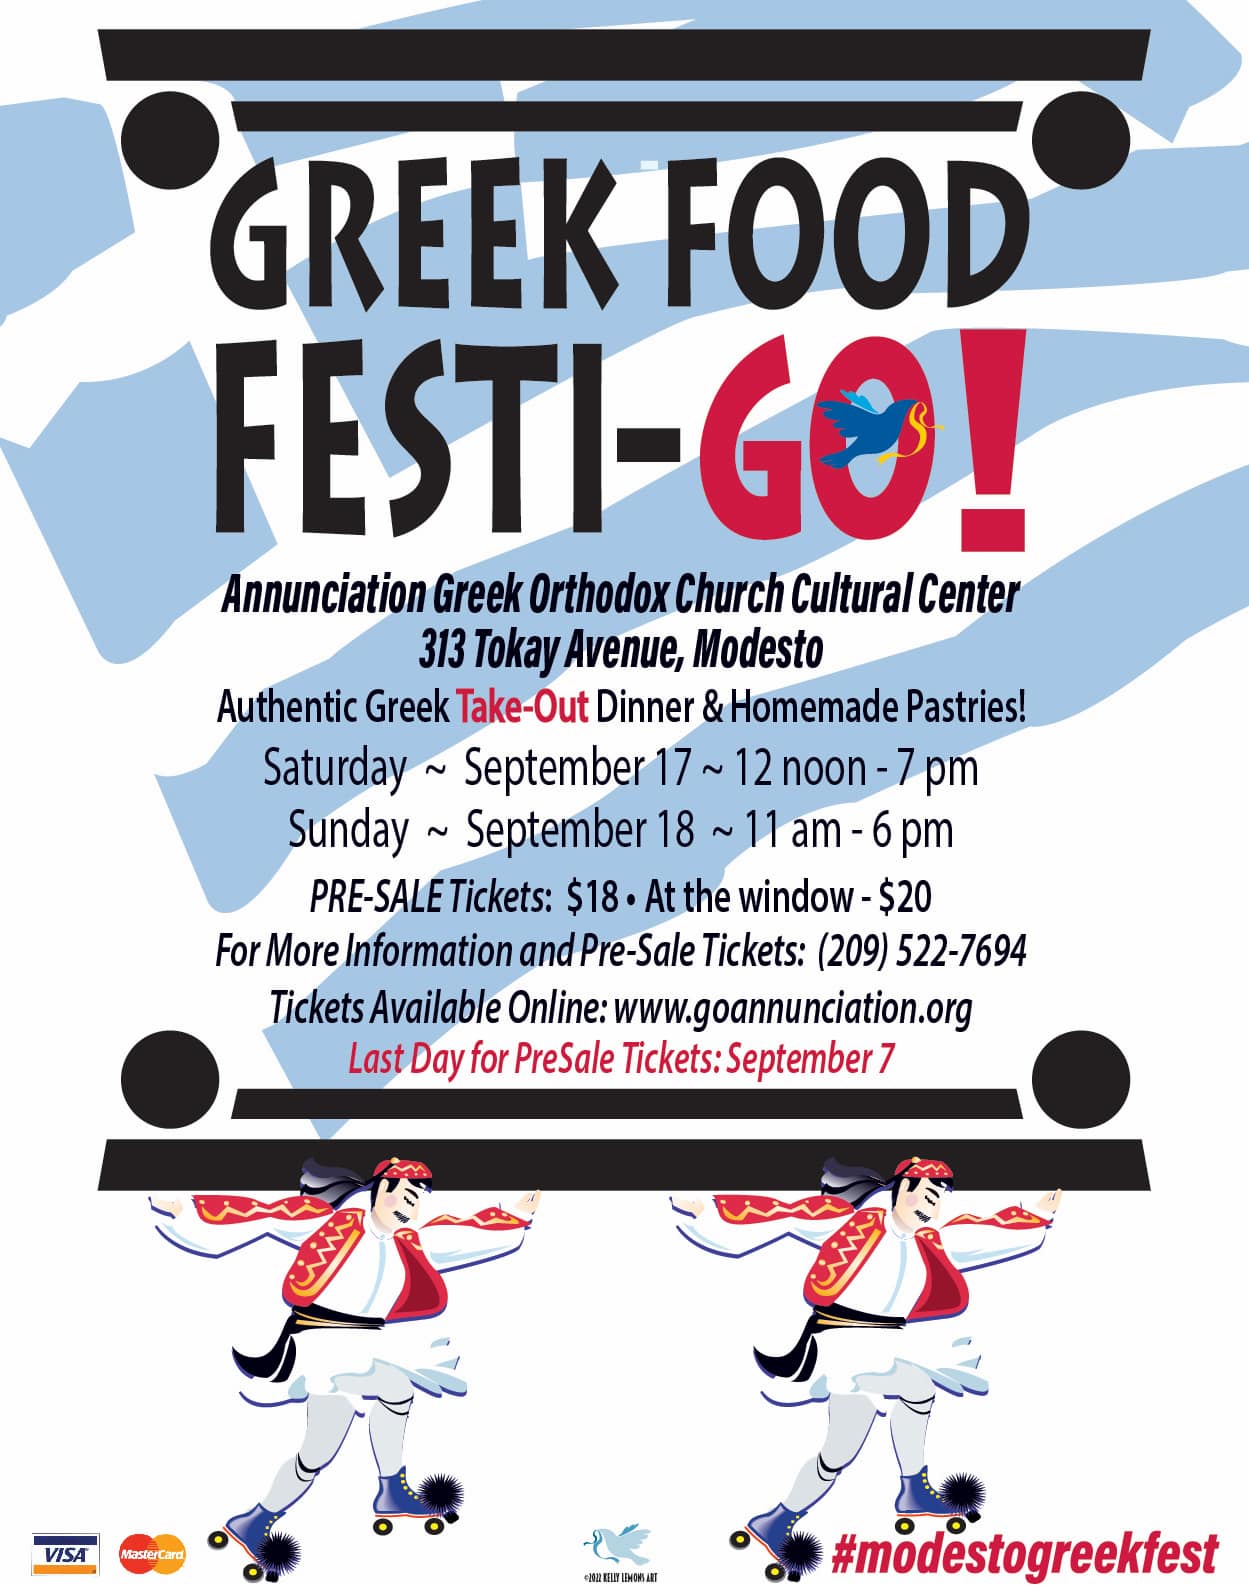 Greek Food Festi-GO